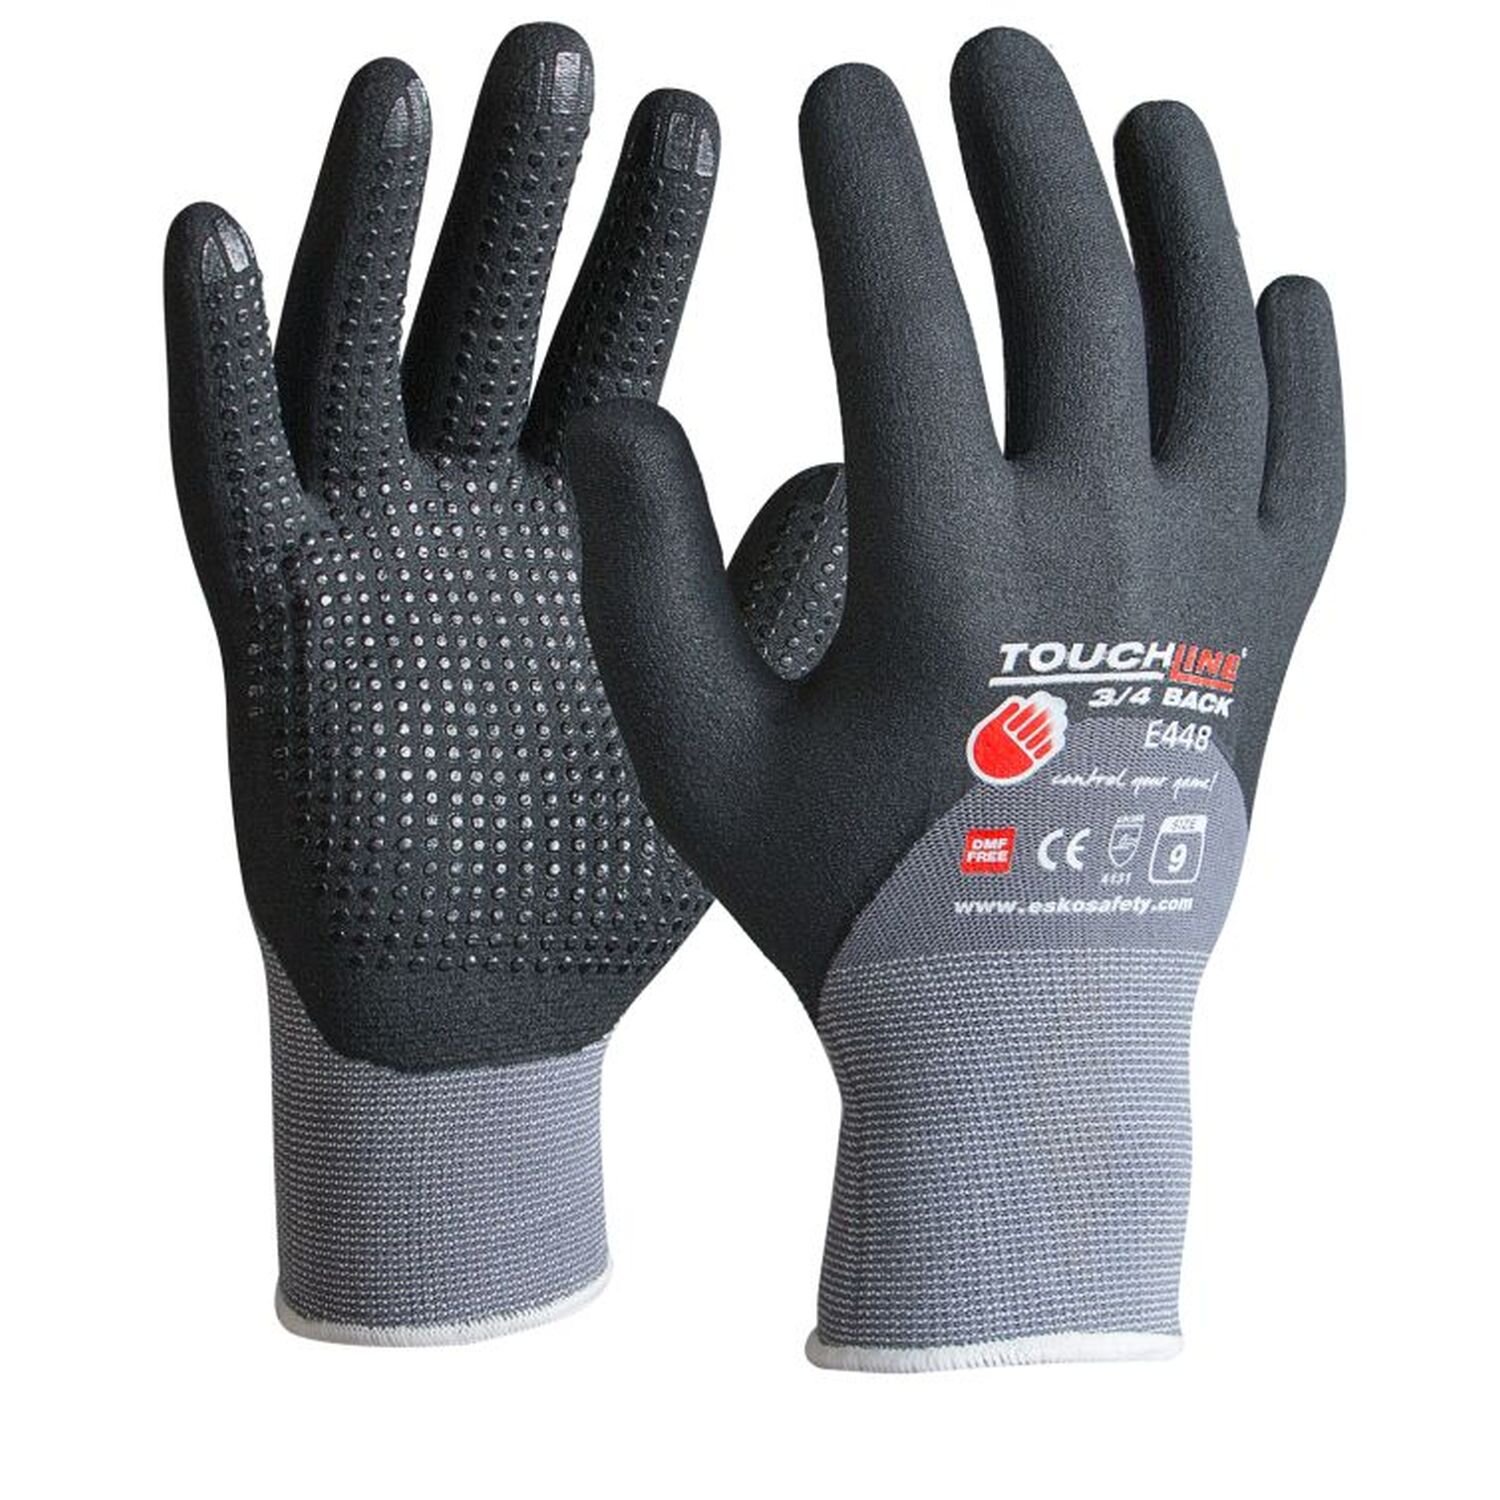 Esko E448 Touchline 3/4 Back+Dots Glove (Pkt 12)